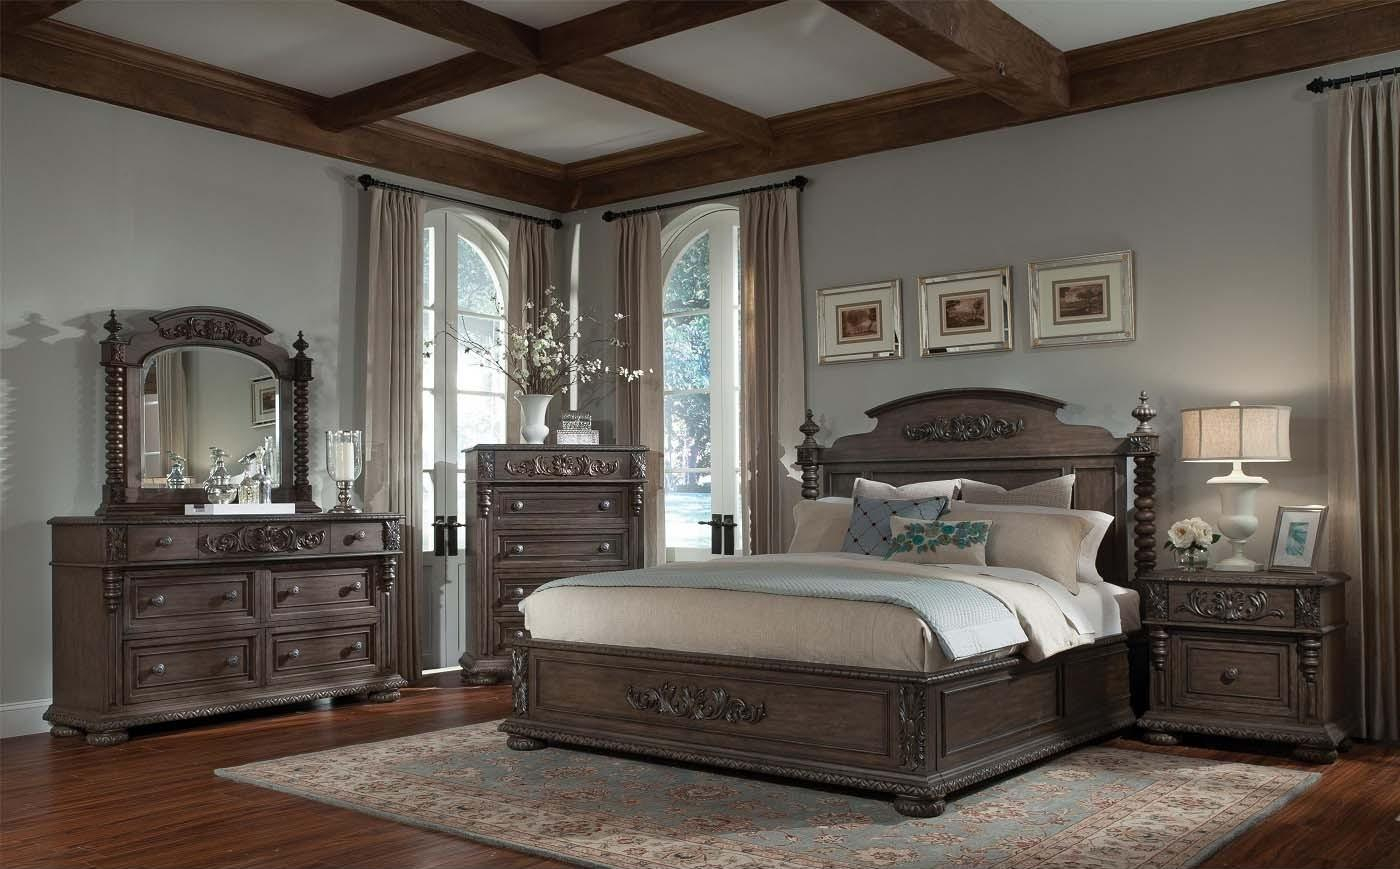 klaussner bedroom furniture set